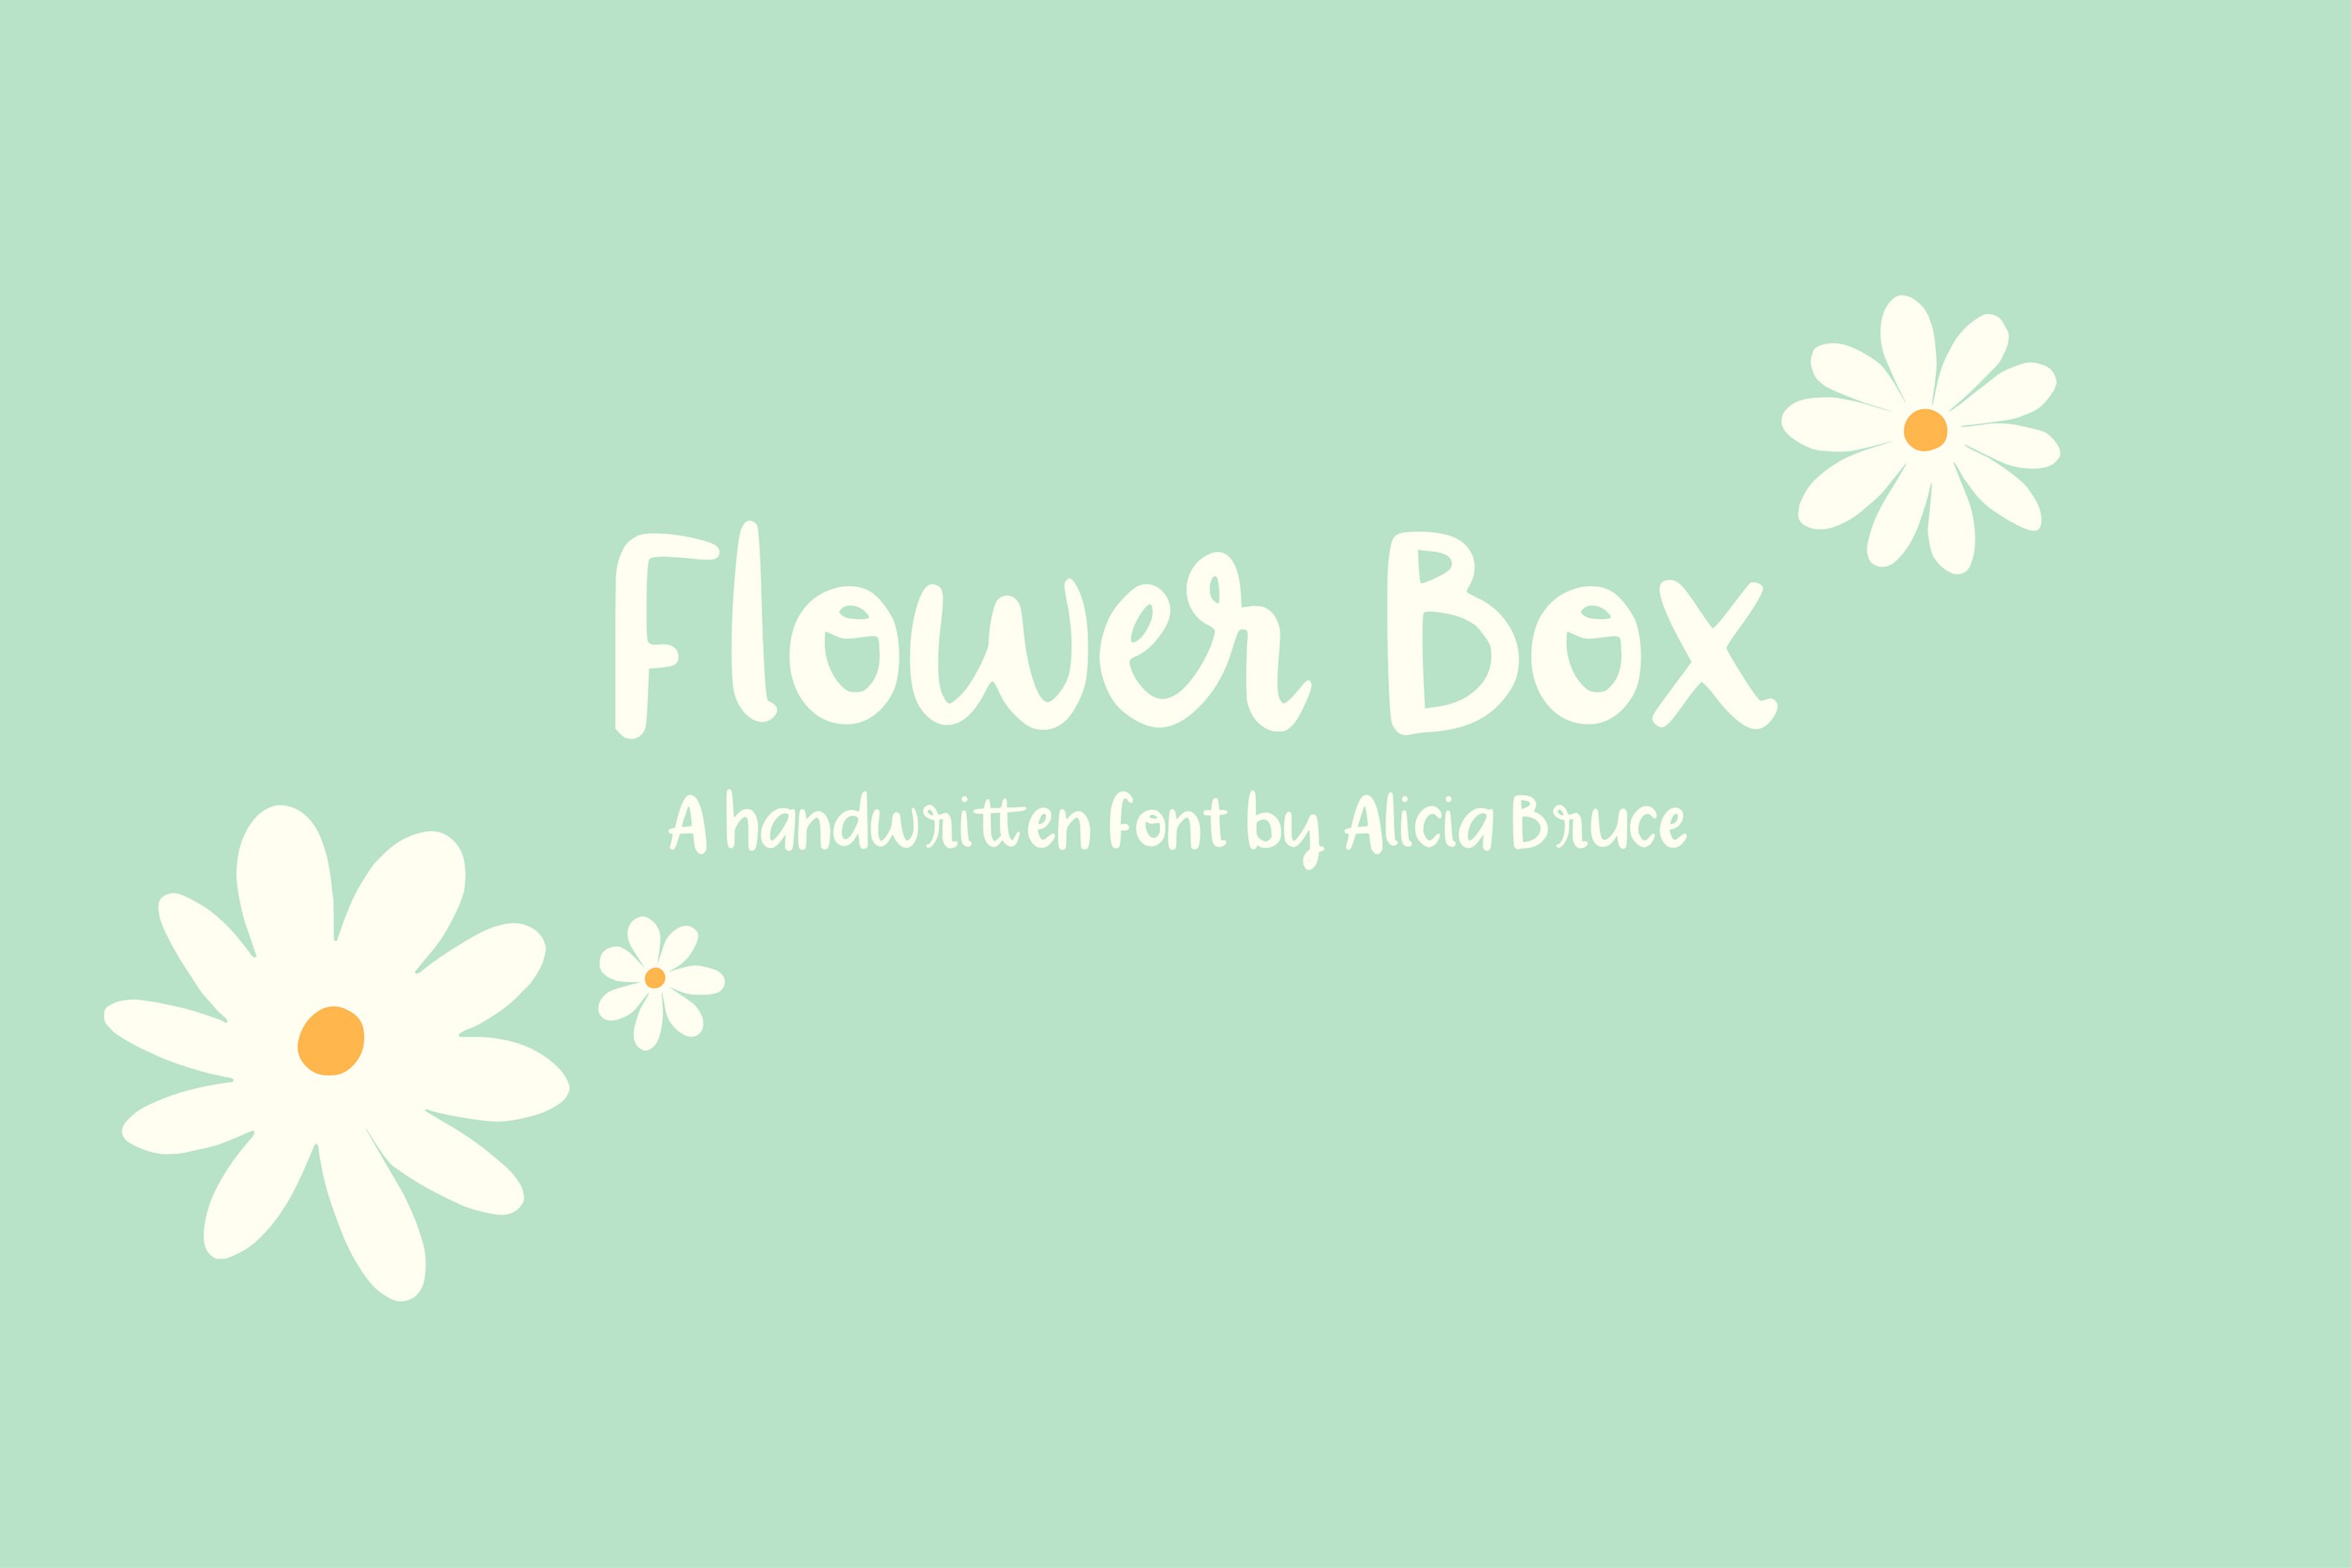 Flower Box - A Handwritten Font cover image.